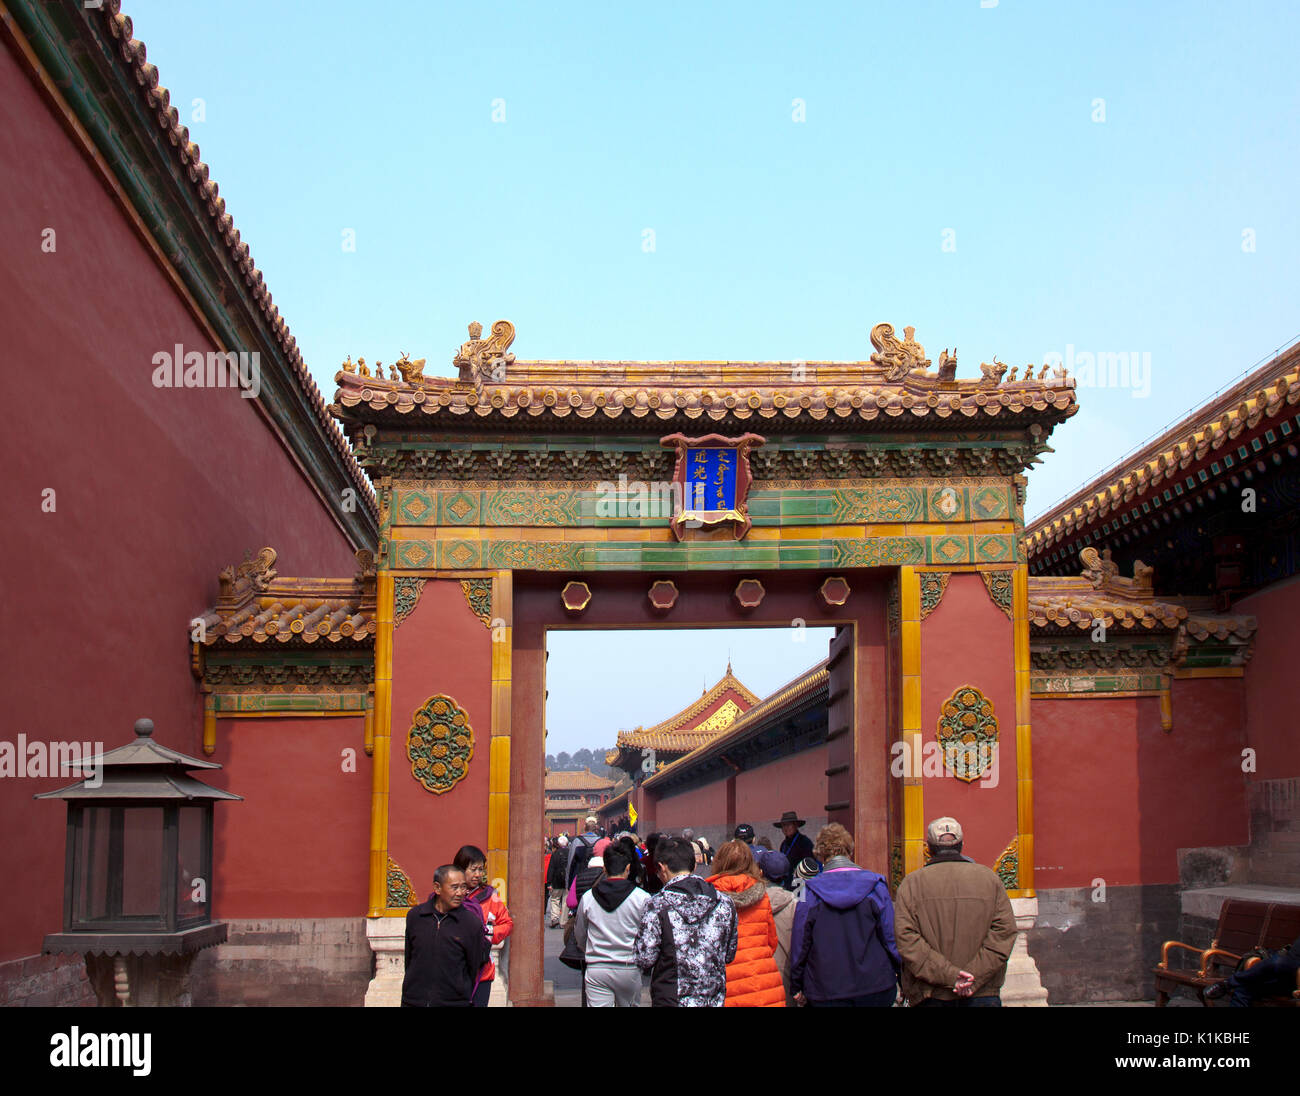 Les gens qui passent par la porte des bénédictions (détail architectural), de la Cité Interdite, Beijing, Chine. Construit de 1406 à 1420 et containi Banque D'Images